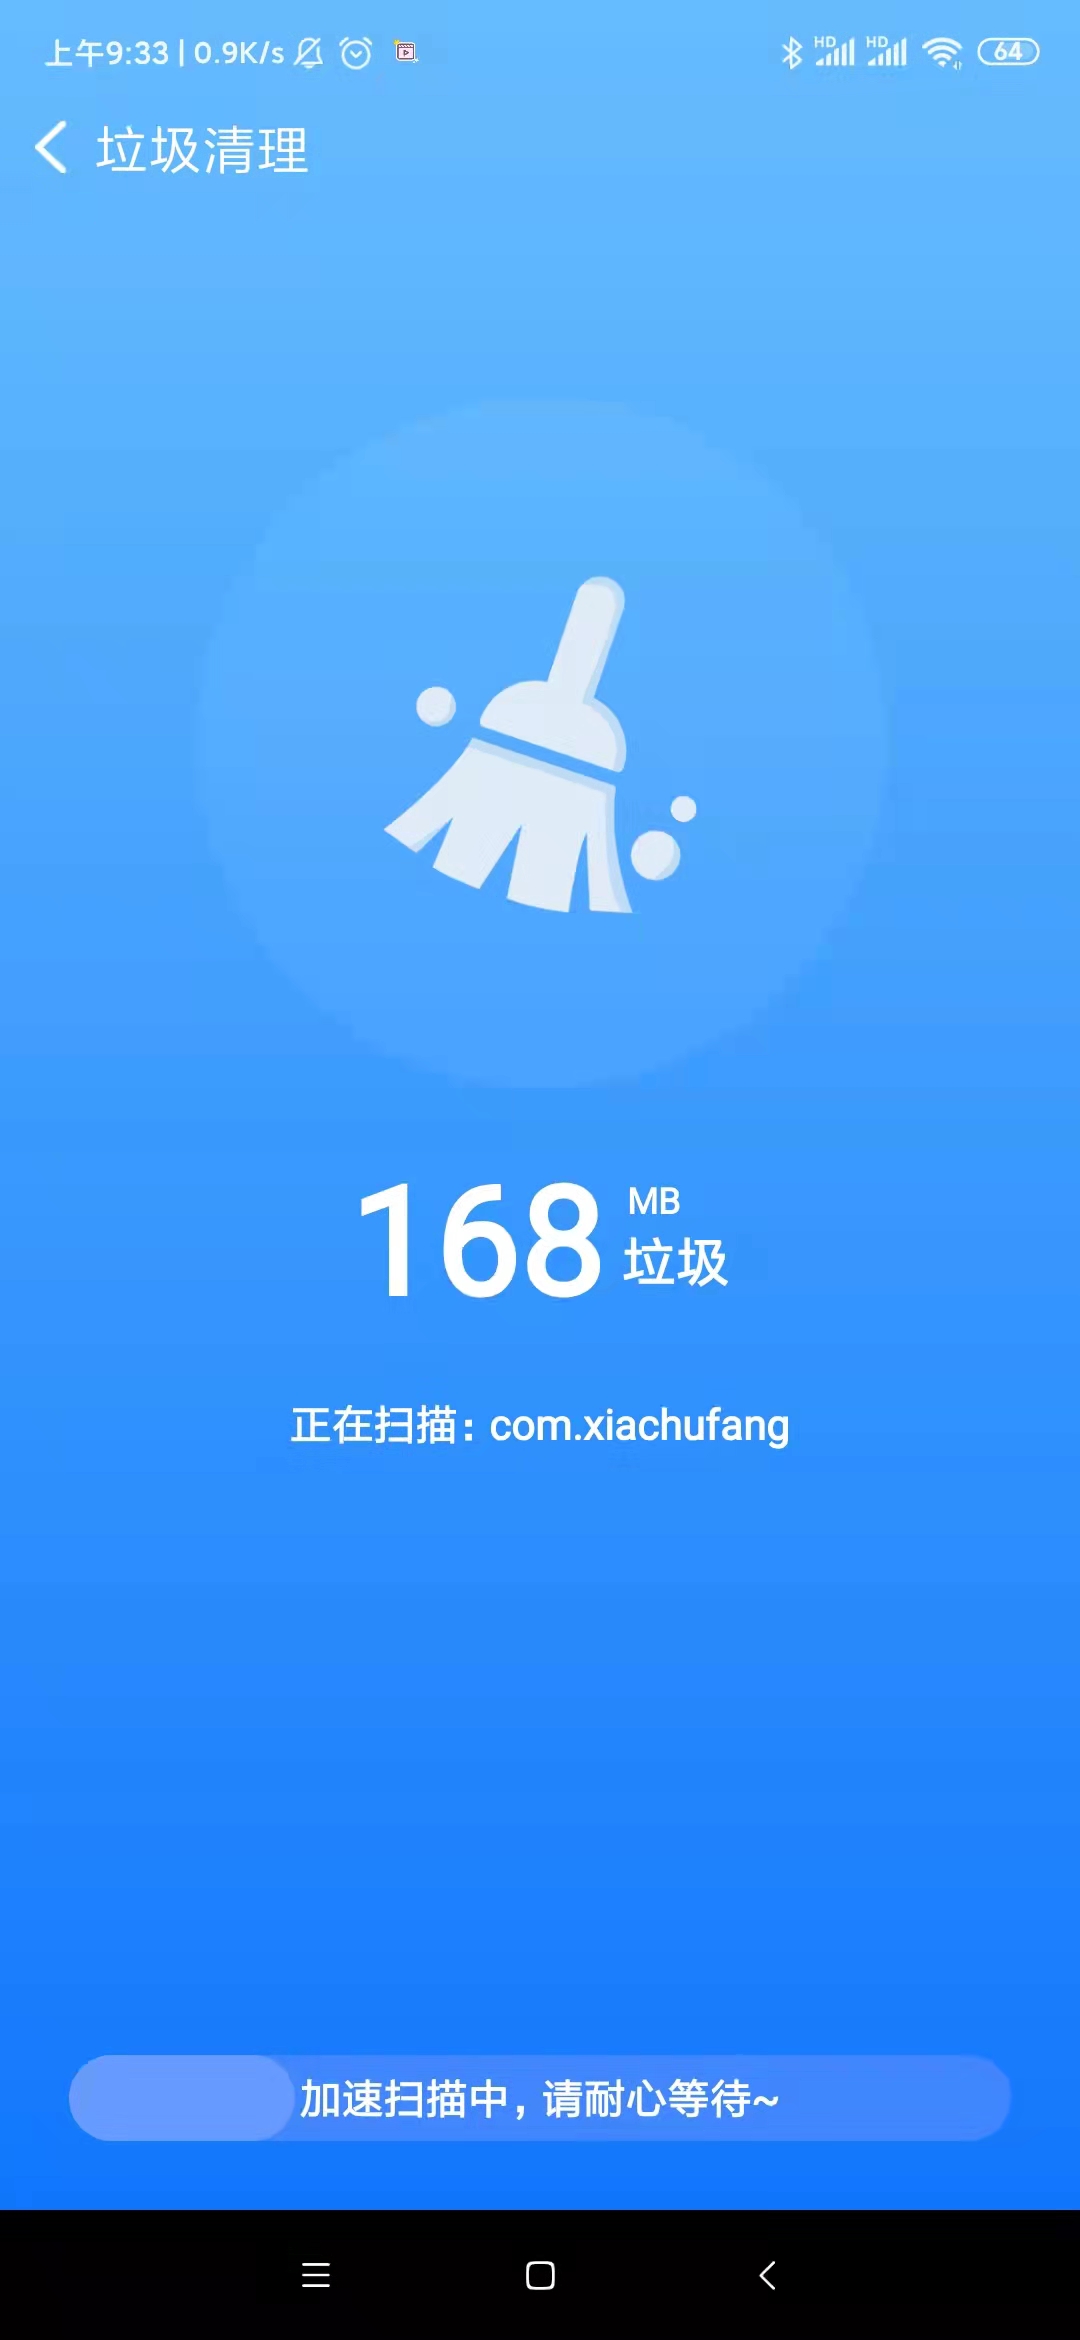 晨星wifi管理app官方版 v1.0.0